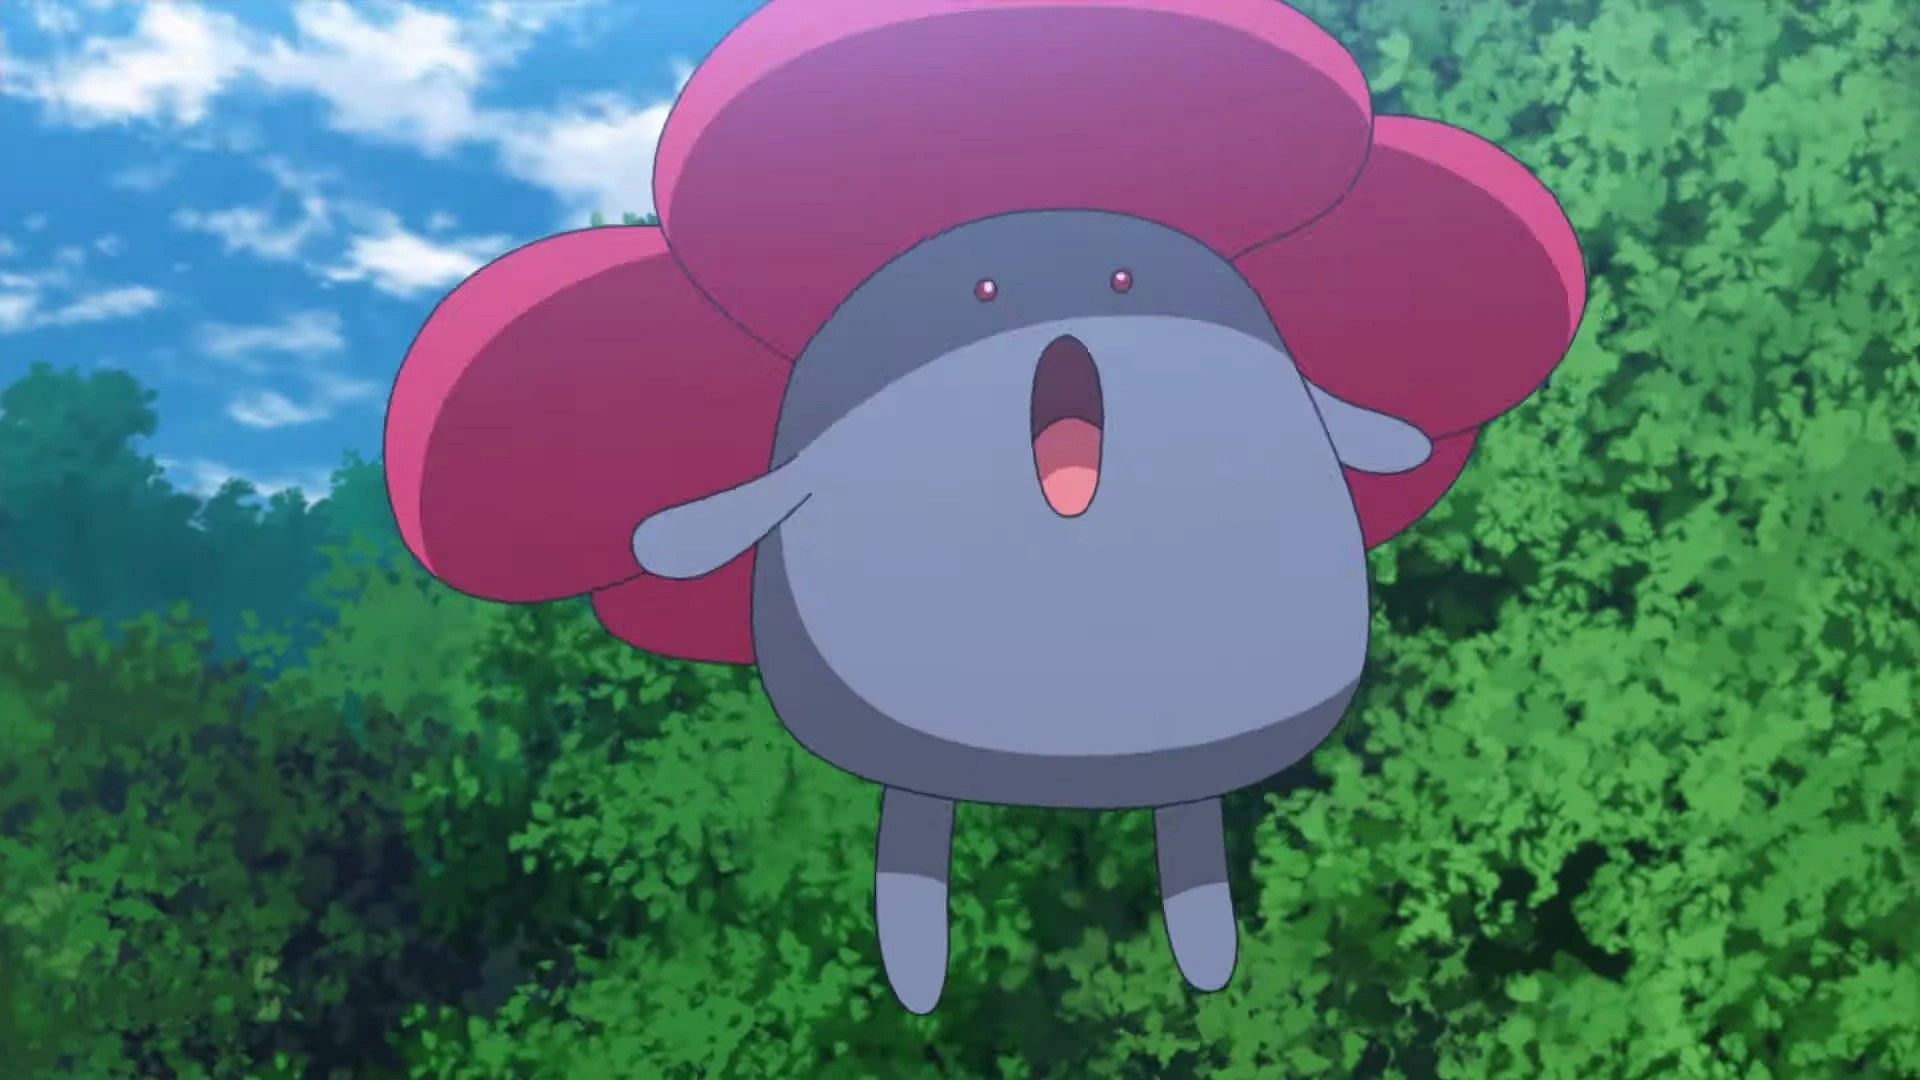 Vileplume in the anime (Image via The Pokemon Company)